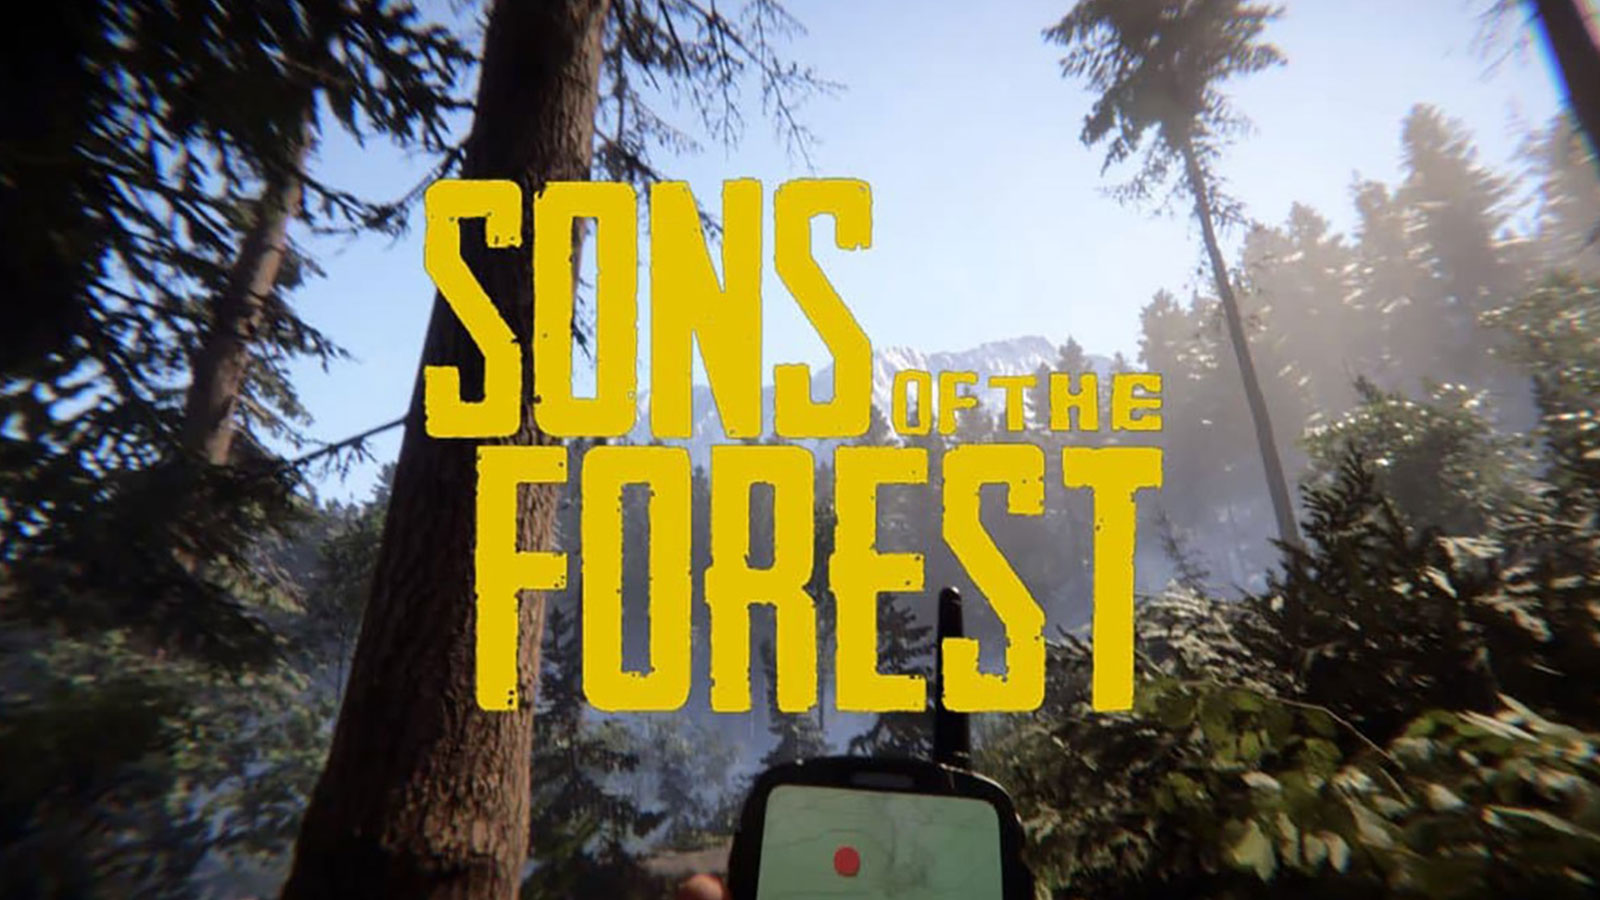 Sons of the Forest sur PS5, PS4 et Xbox - Quand la sortie sur